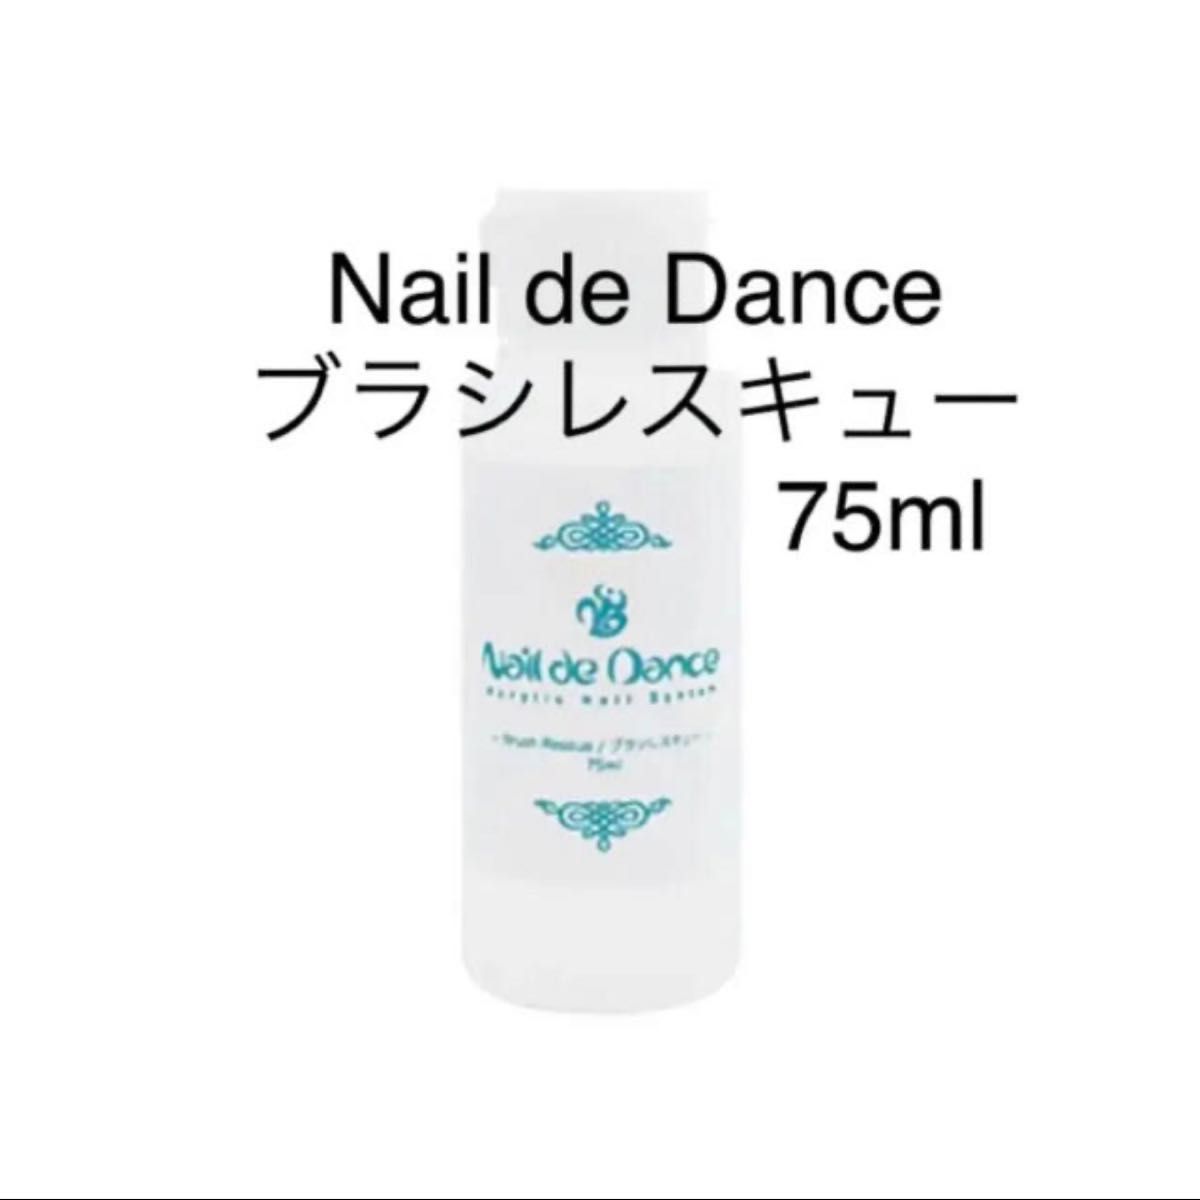 ジェルクリーナー Nail de Dance ブラシレスキュー 75ml ネイルデダンス 